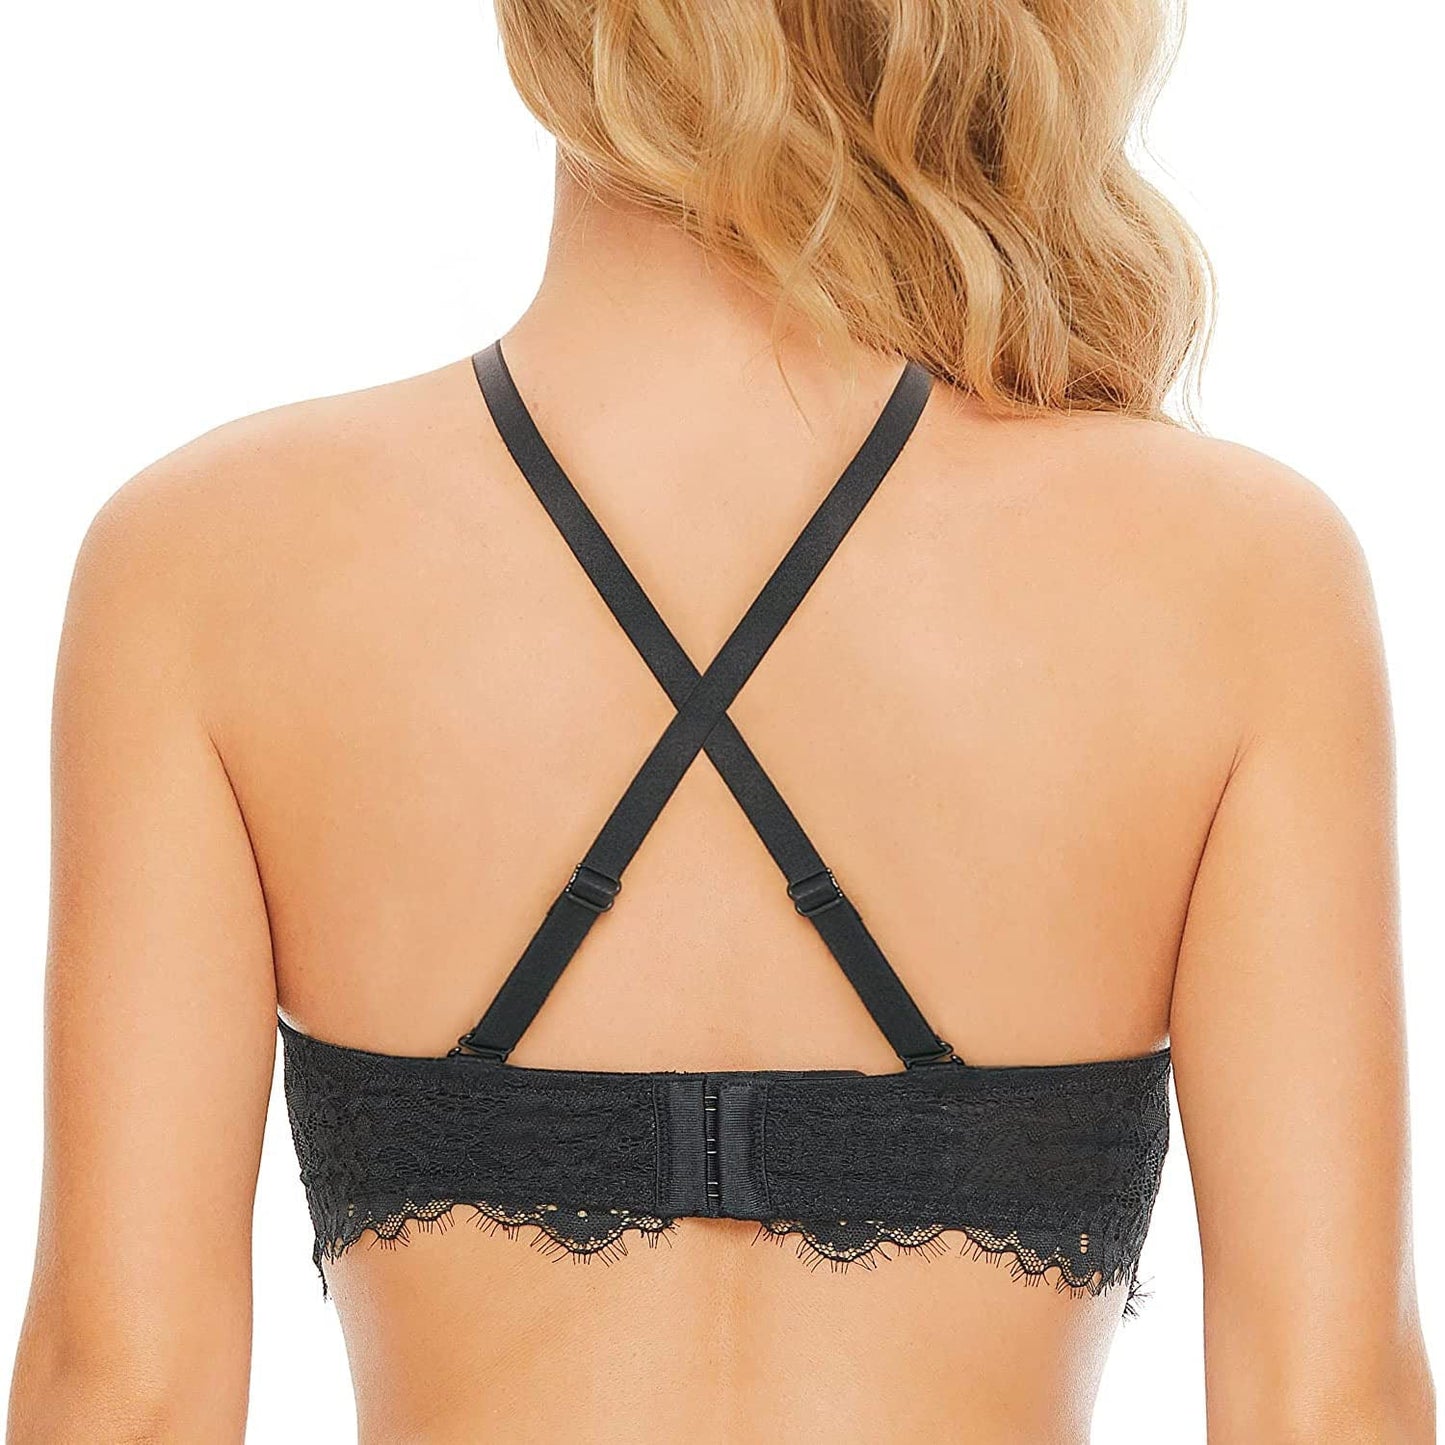 Women's Strapless Lace Bra Underwire Convertible Bra Plus Size Silicone-Free